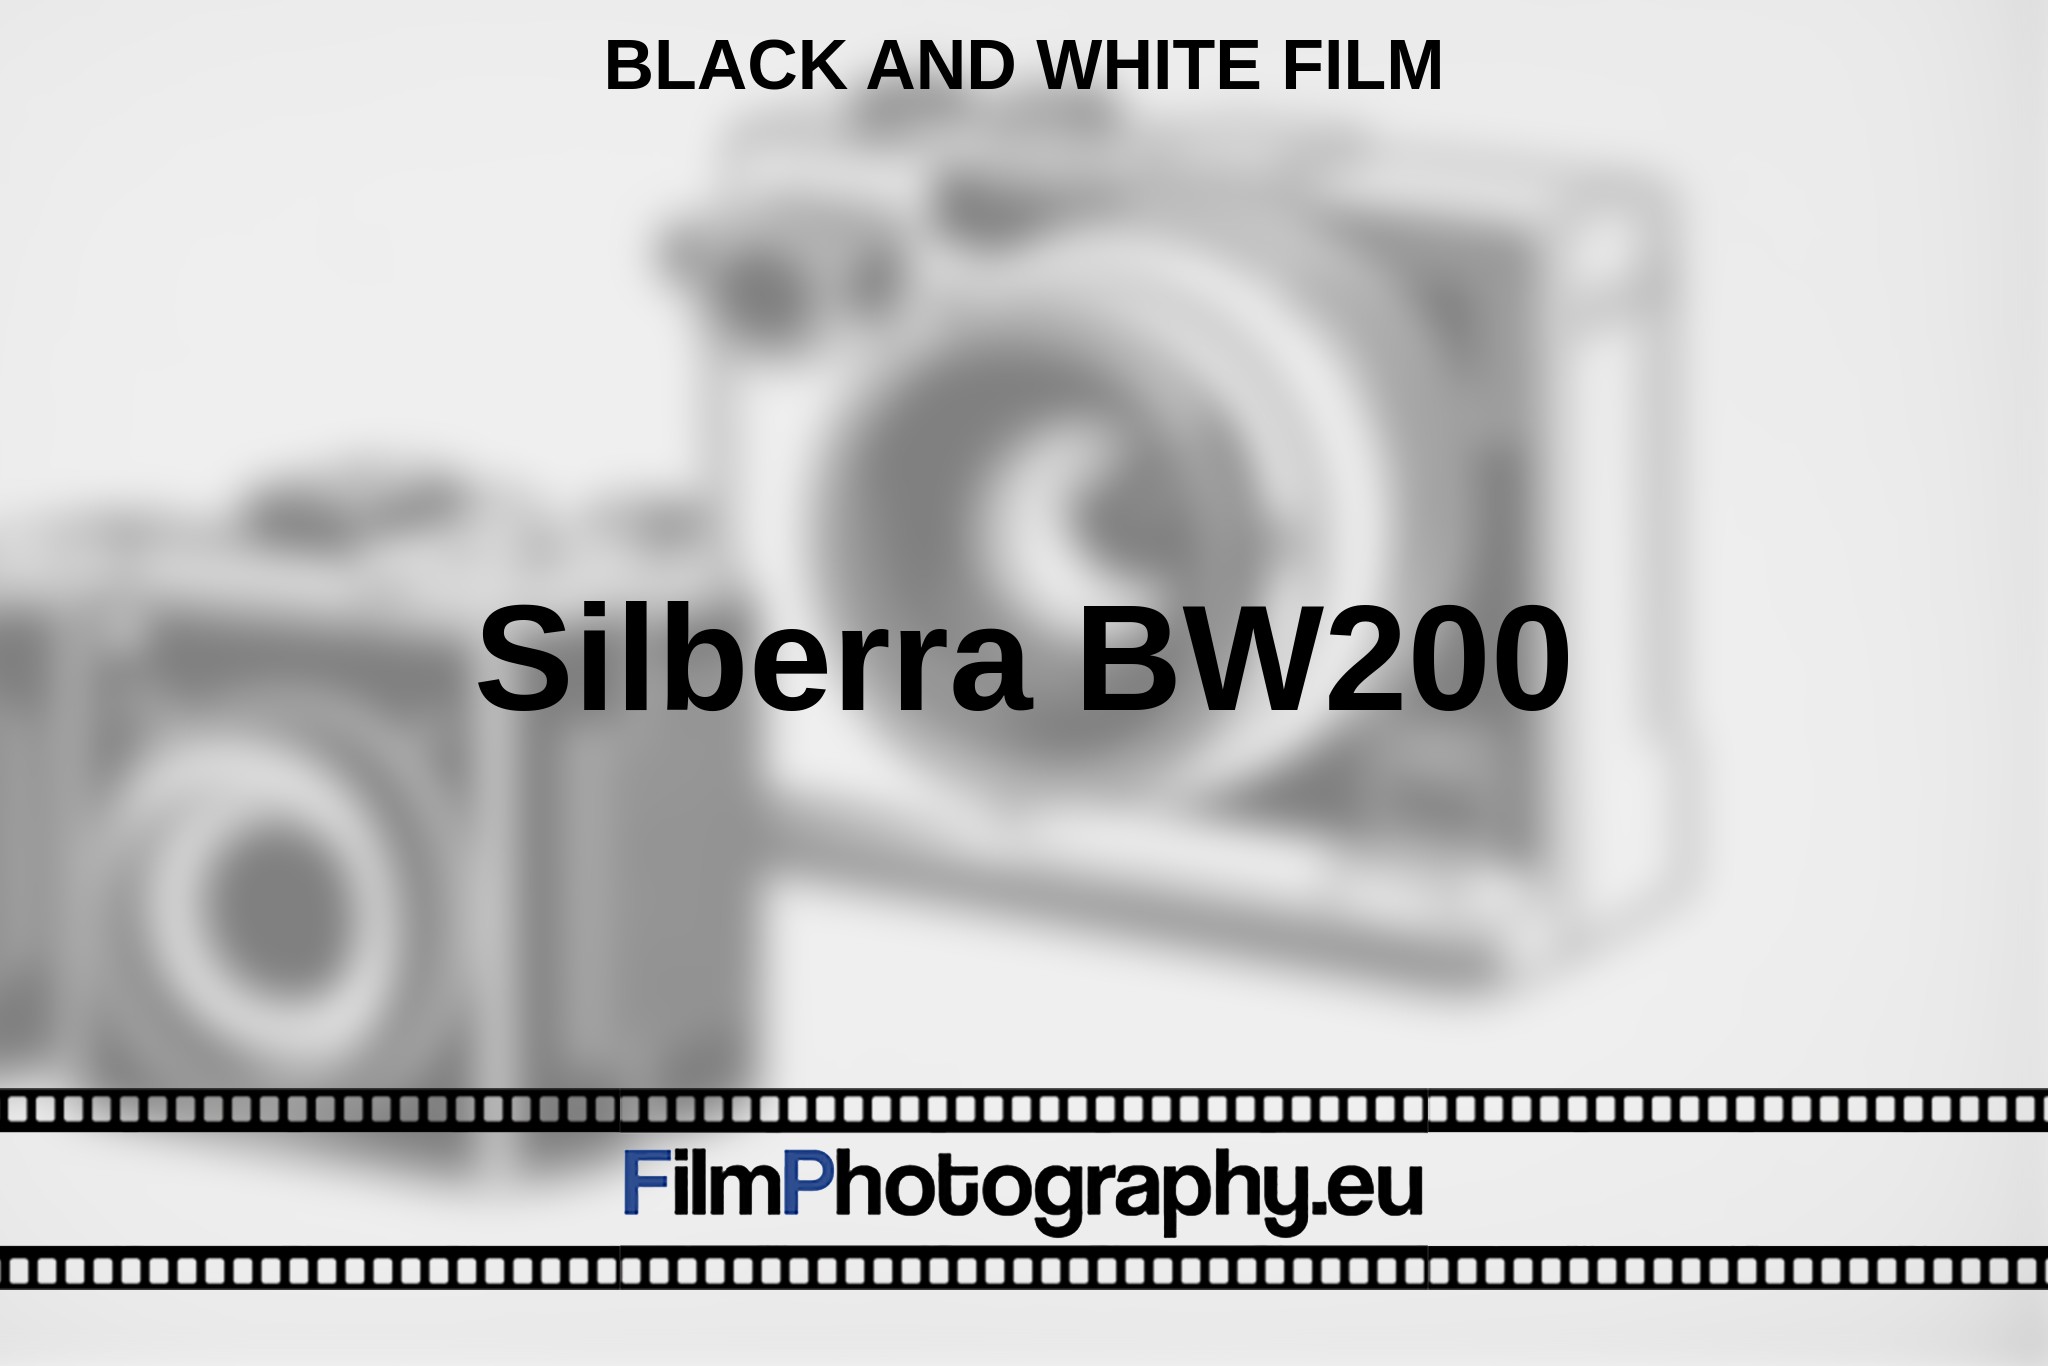 silberra-bw200-black-and-white-film-en-bnv.jpg